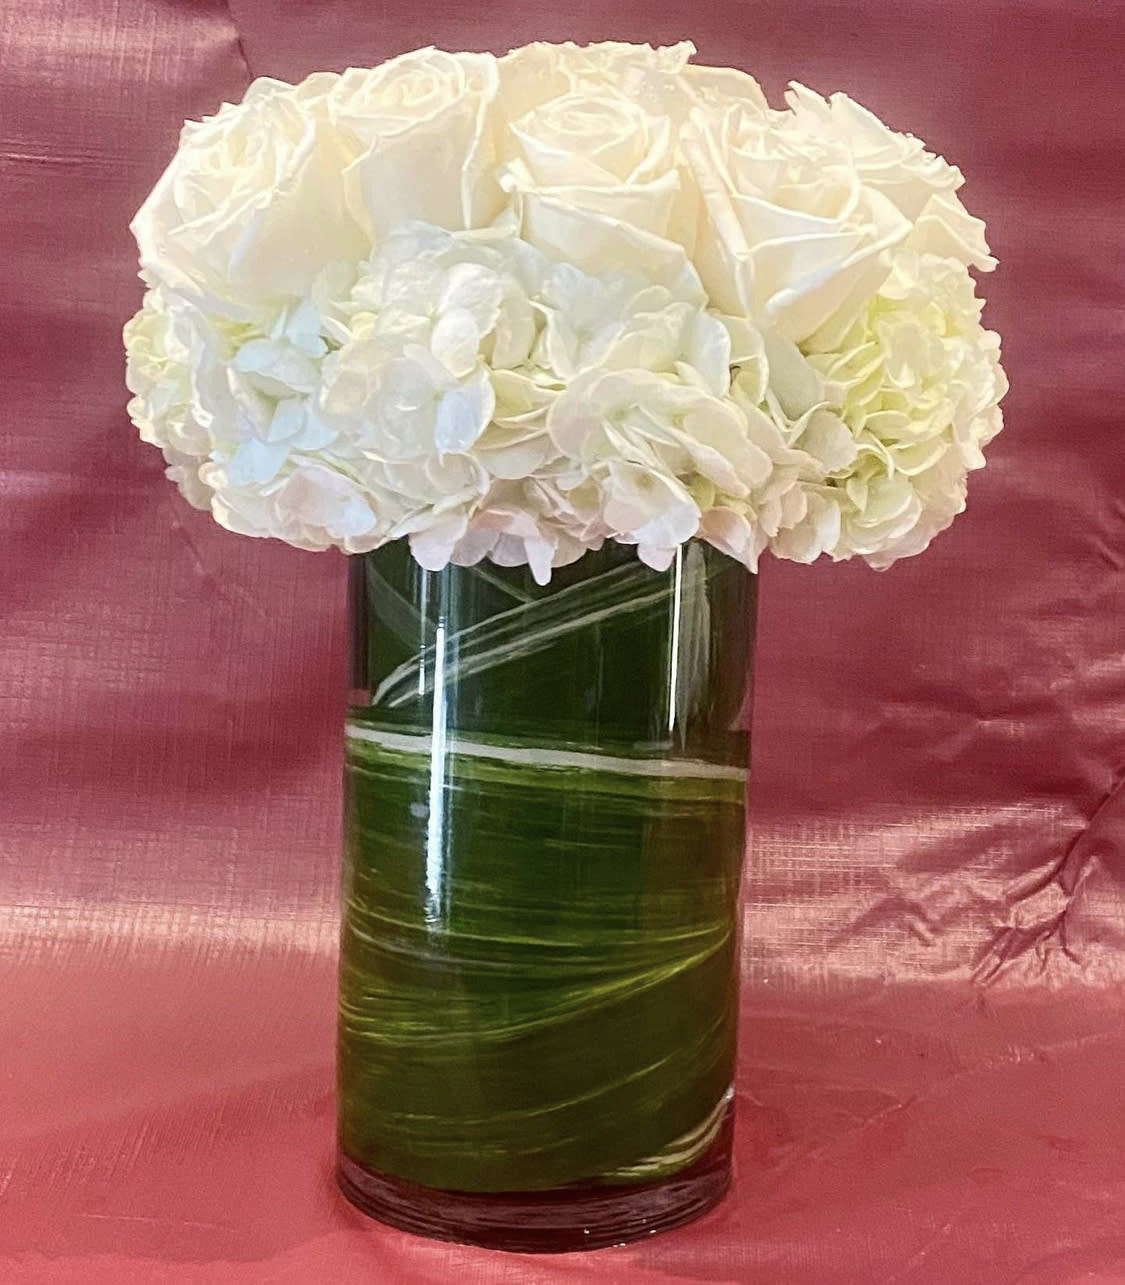 Custom arrangement of white roses &amp; white hydrangeas in leaf lined clear glass vase. - Custom arrangement of white roses &amp; white hydrangeas in leaf lined clear glass vase.